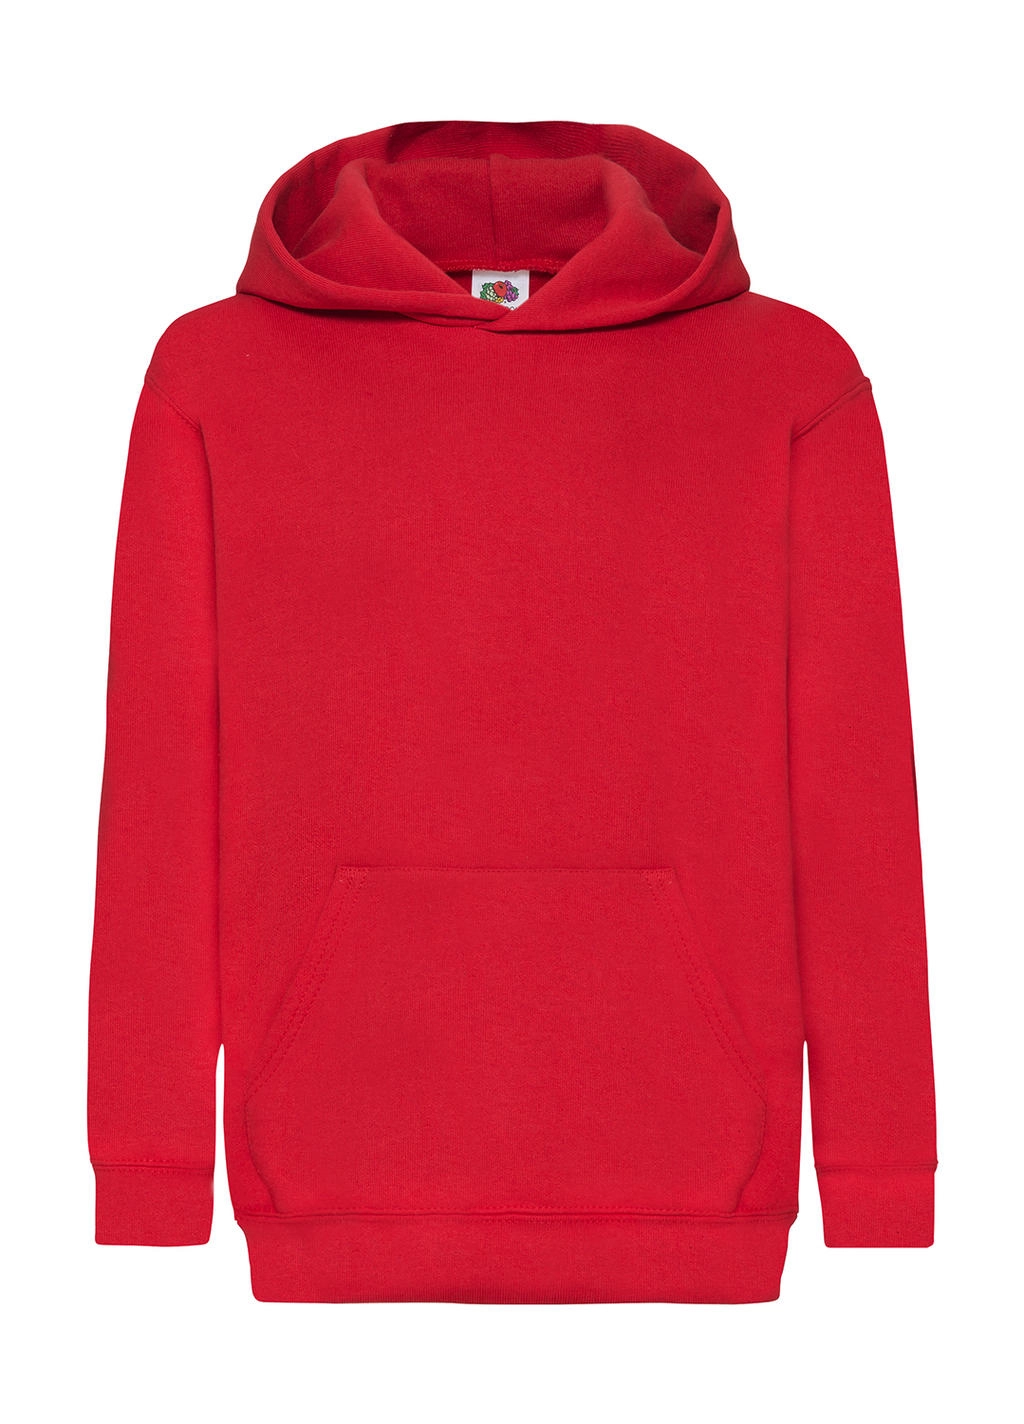 Kids` Classic Hooded Sweat zum Besticken und Bedrucken in der Farbe Red mit Ihren Logo, Schriftzug oder Motiv.